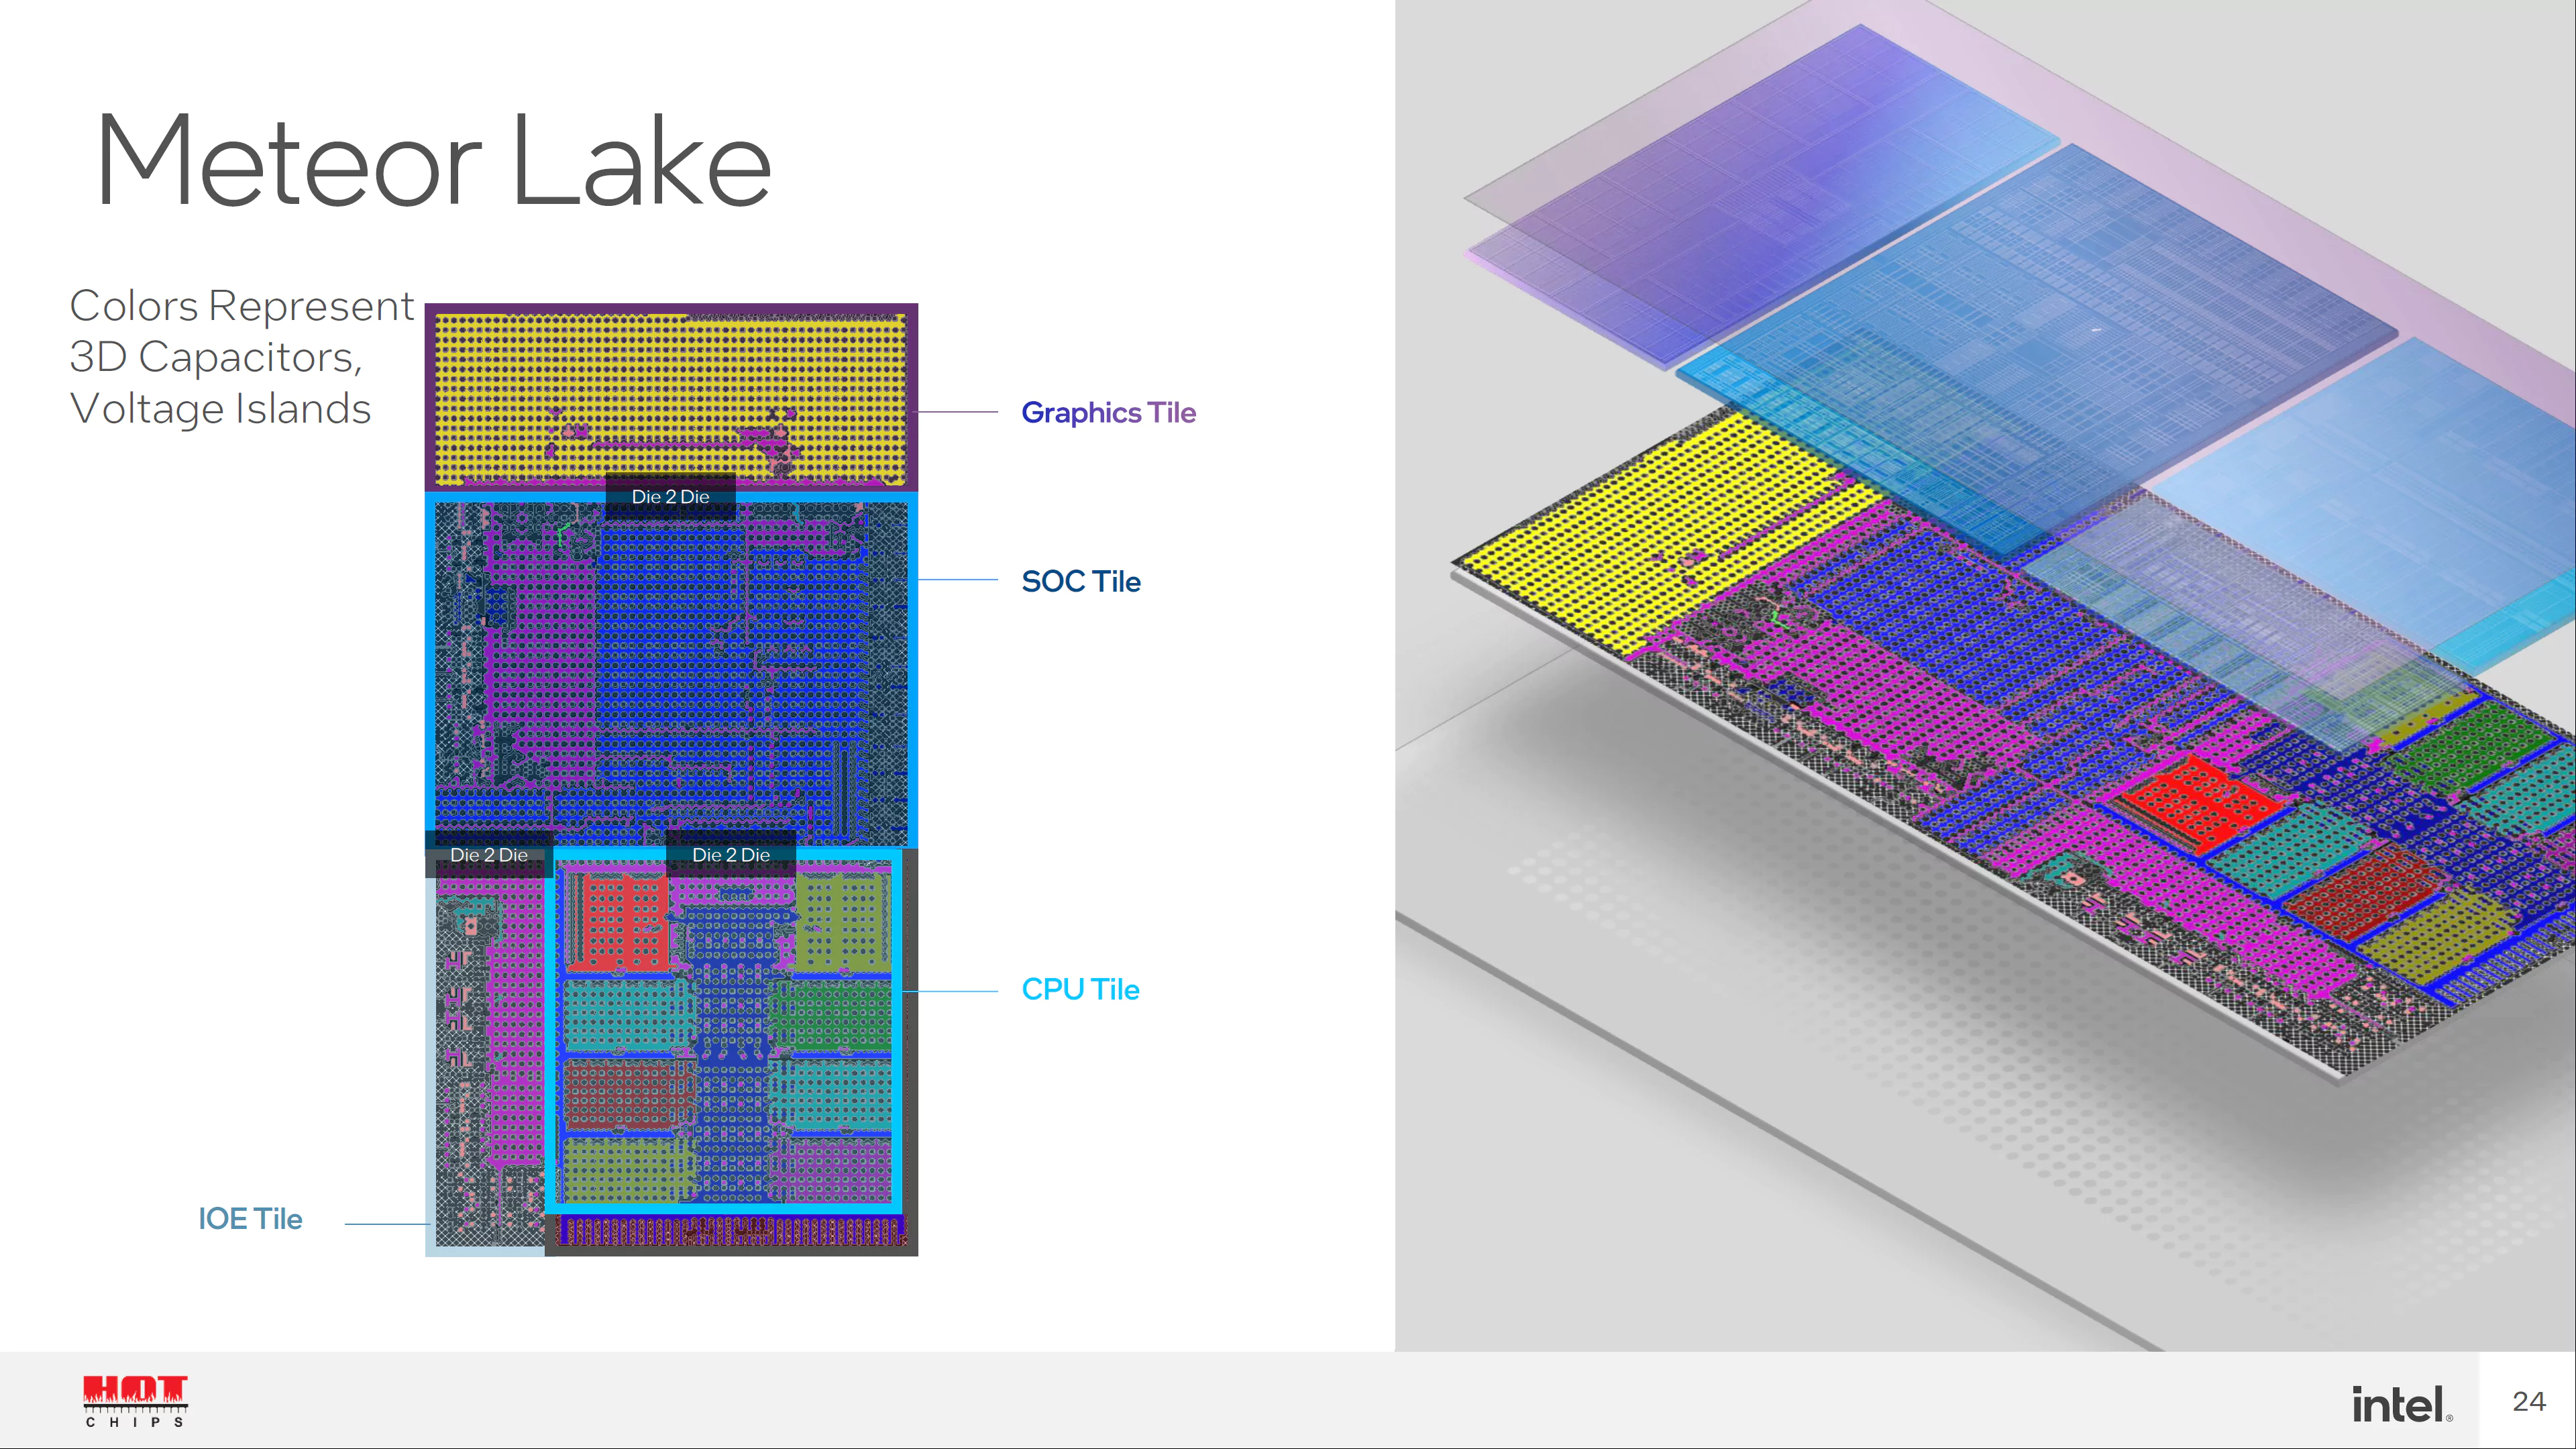 Intel Meteor Lake CPU'larının Watt Başına %50'den Fazla Performansı Hedeflediği Bildirildi ve 2 Kat IGPU Kazanımı 2